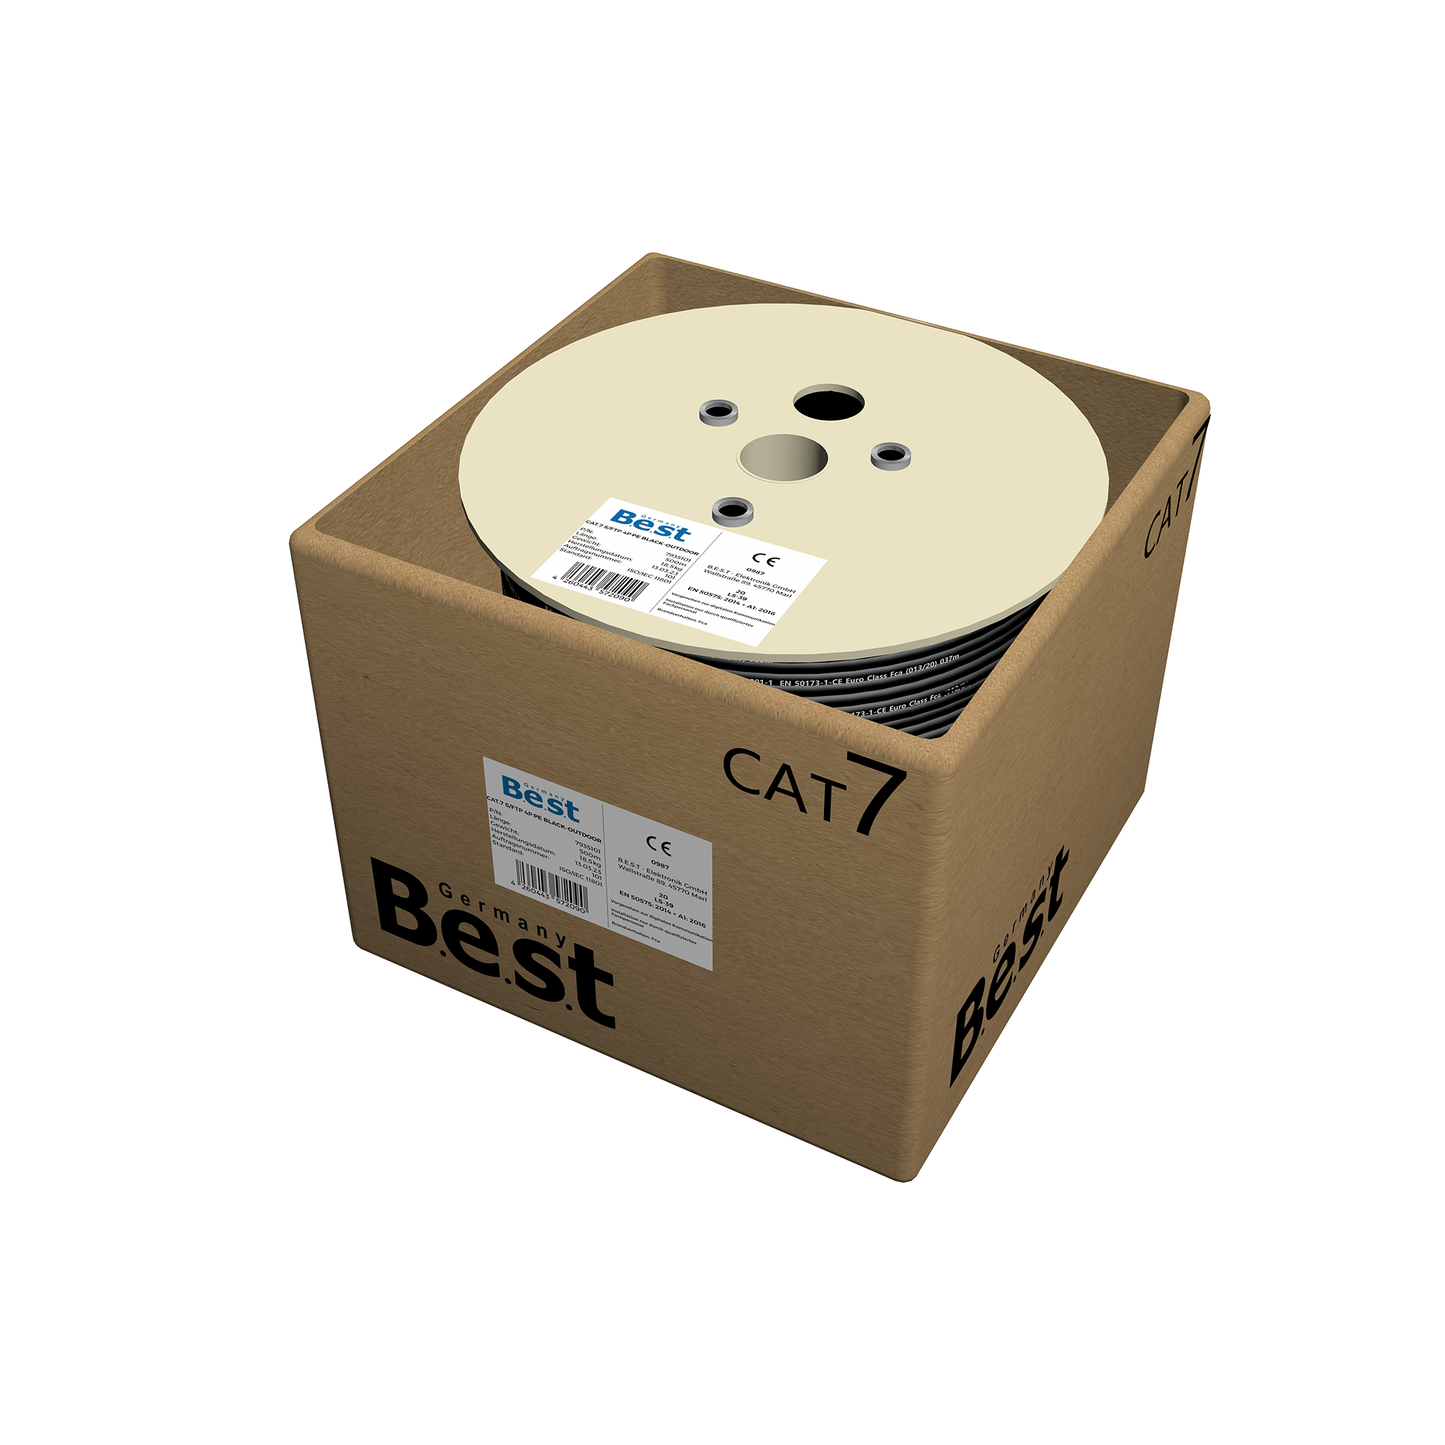 CAT 7 Outdoor Verlegekabel 500m Simplex BEST Gigabit Netzwerkkabel KUPFER